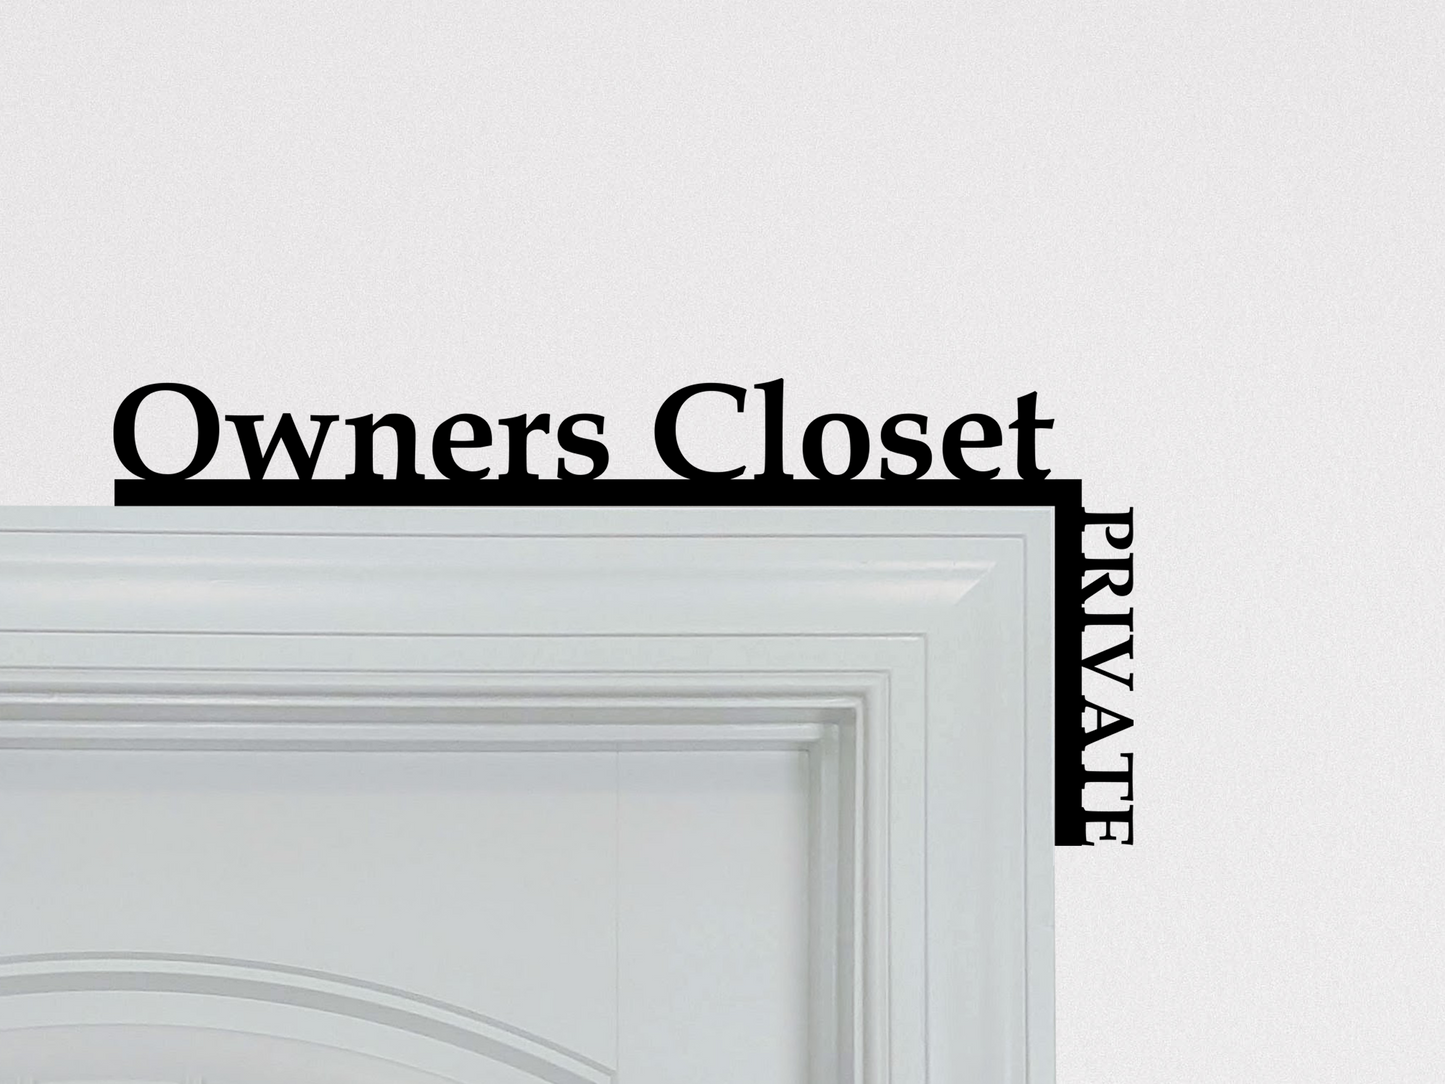 Owner's Closet "Over the Door" Door Topper Sign